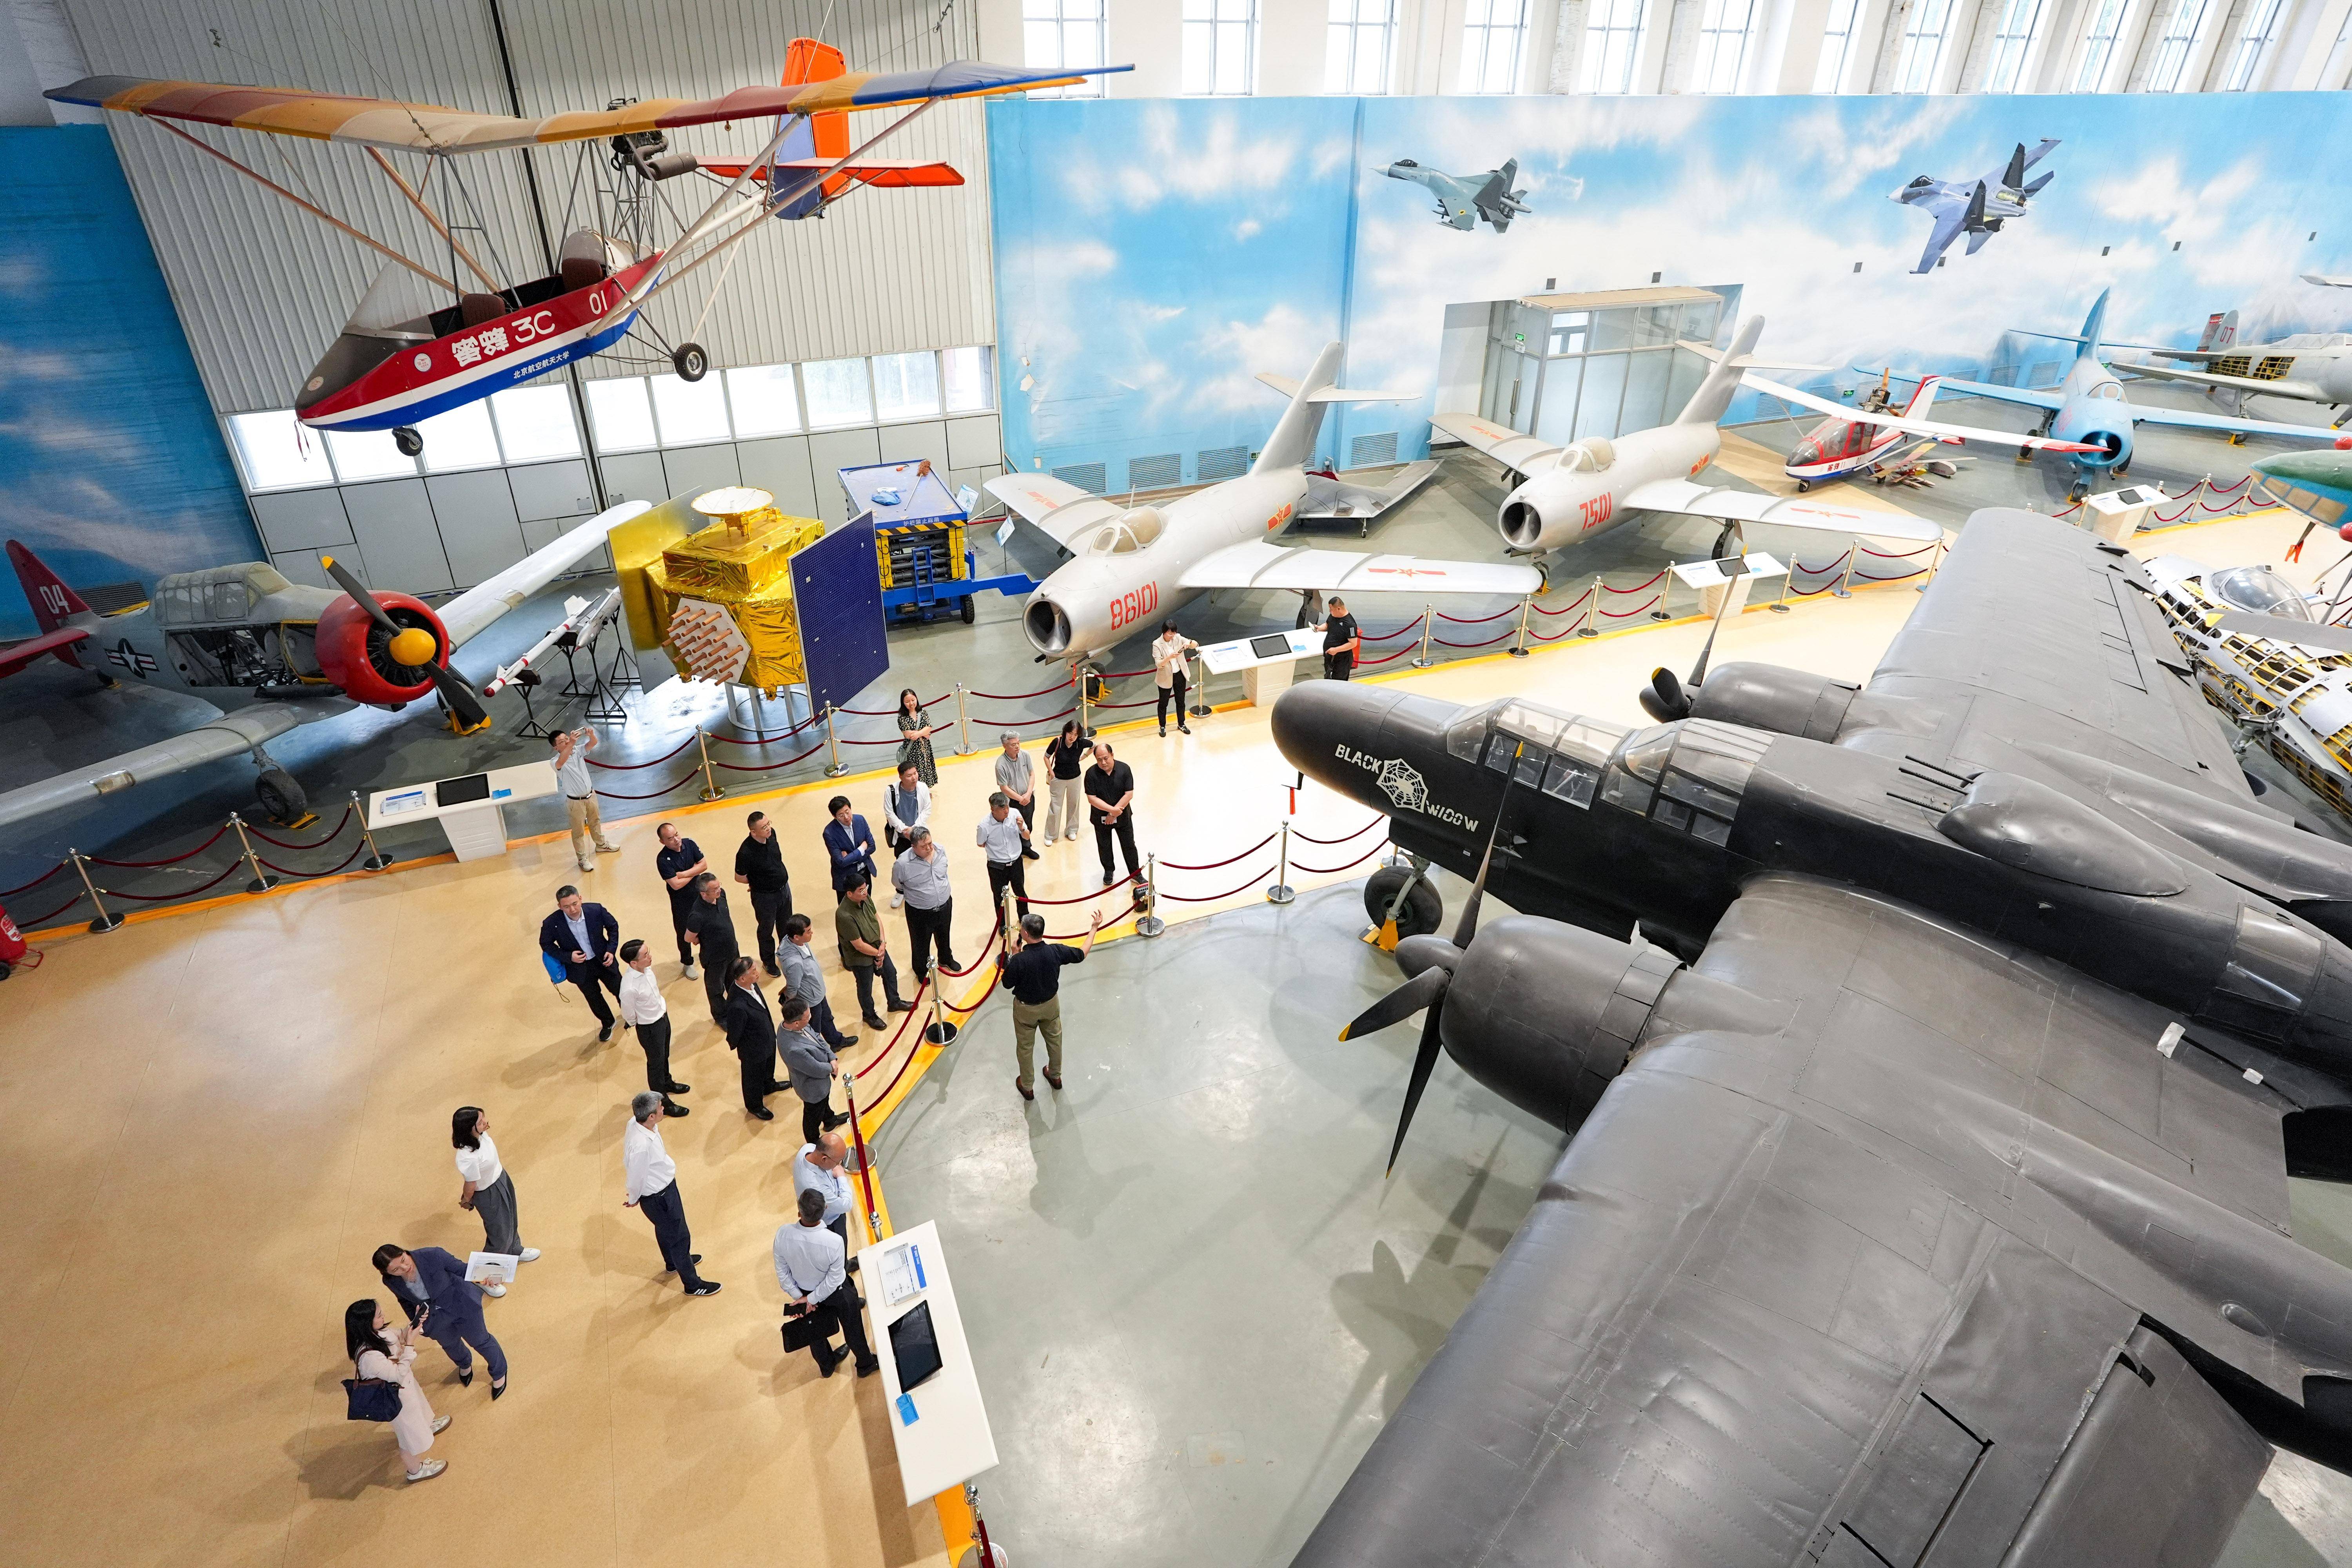 新华全媒 丨高校博物馆奇妙之旅:北京航空航天博物馆